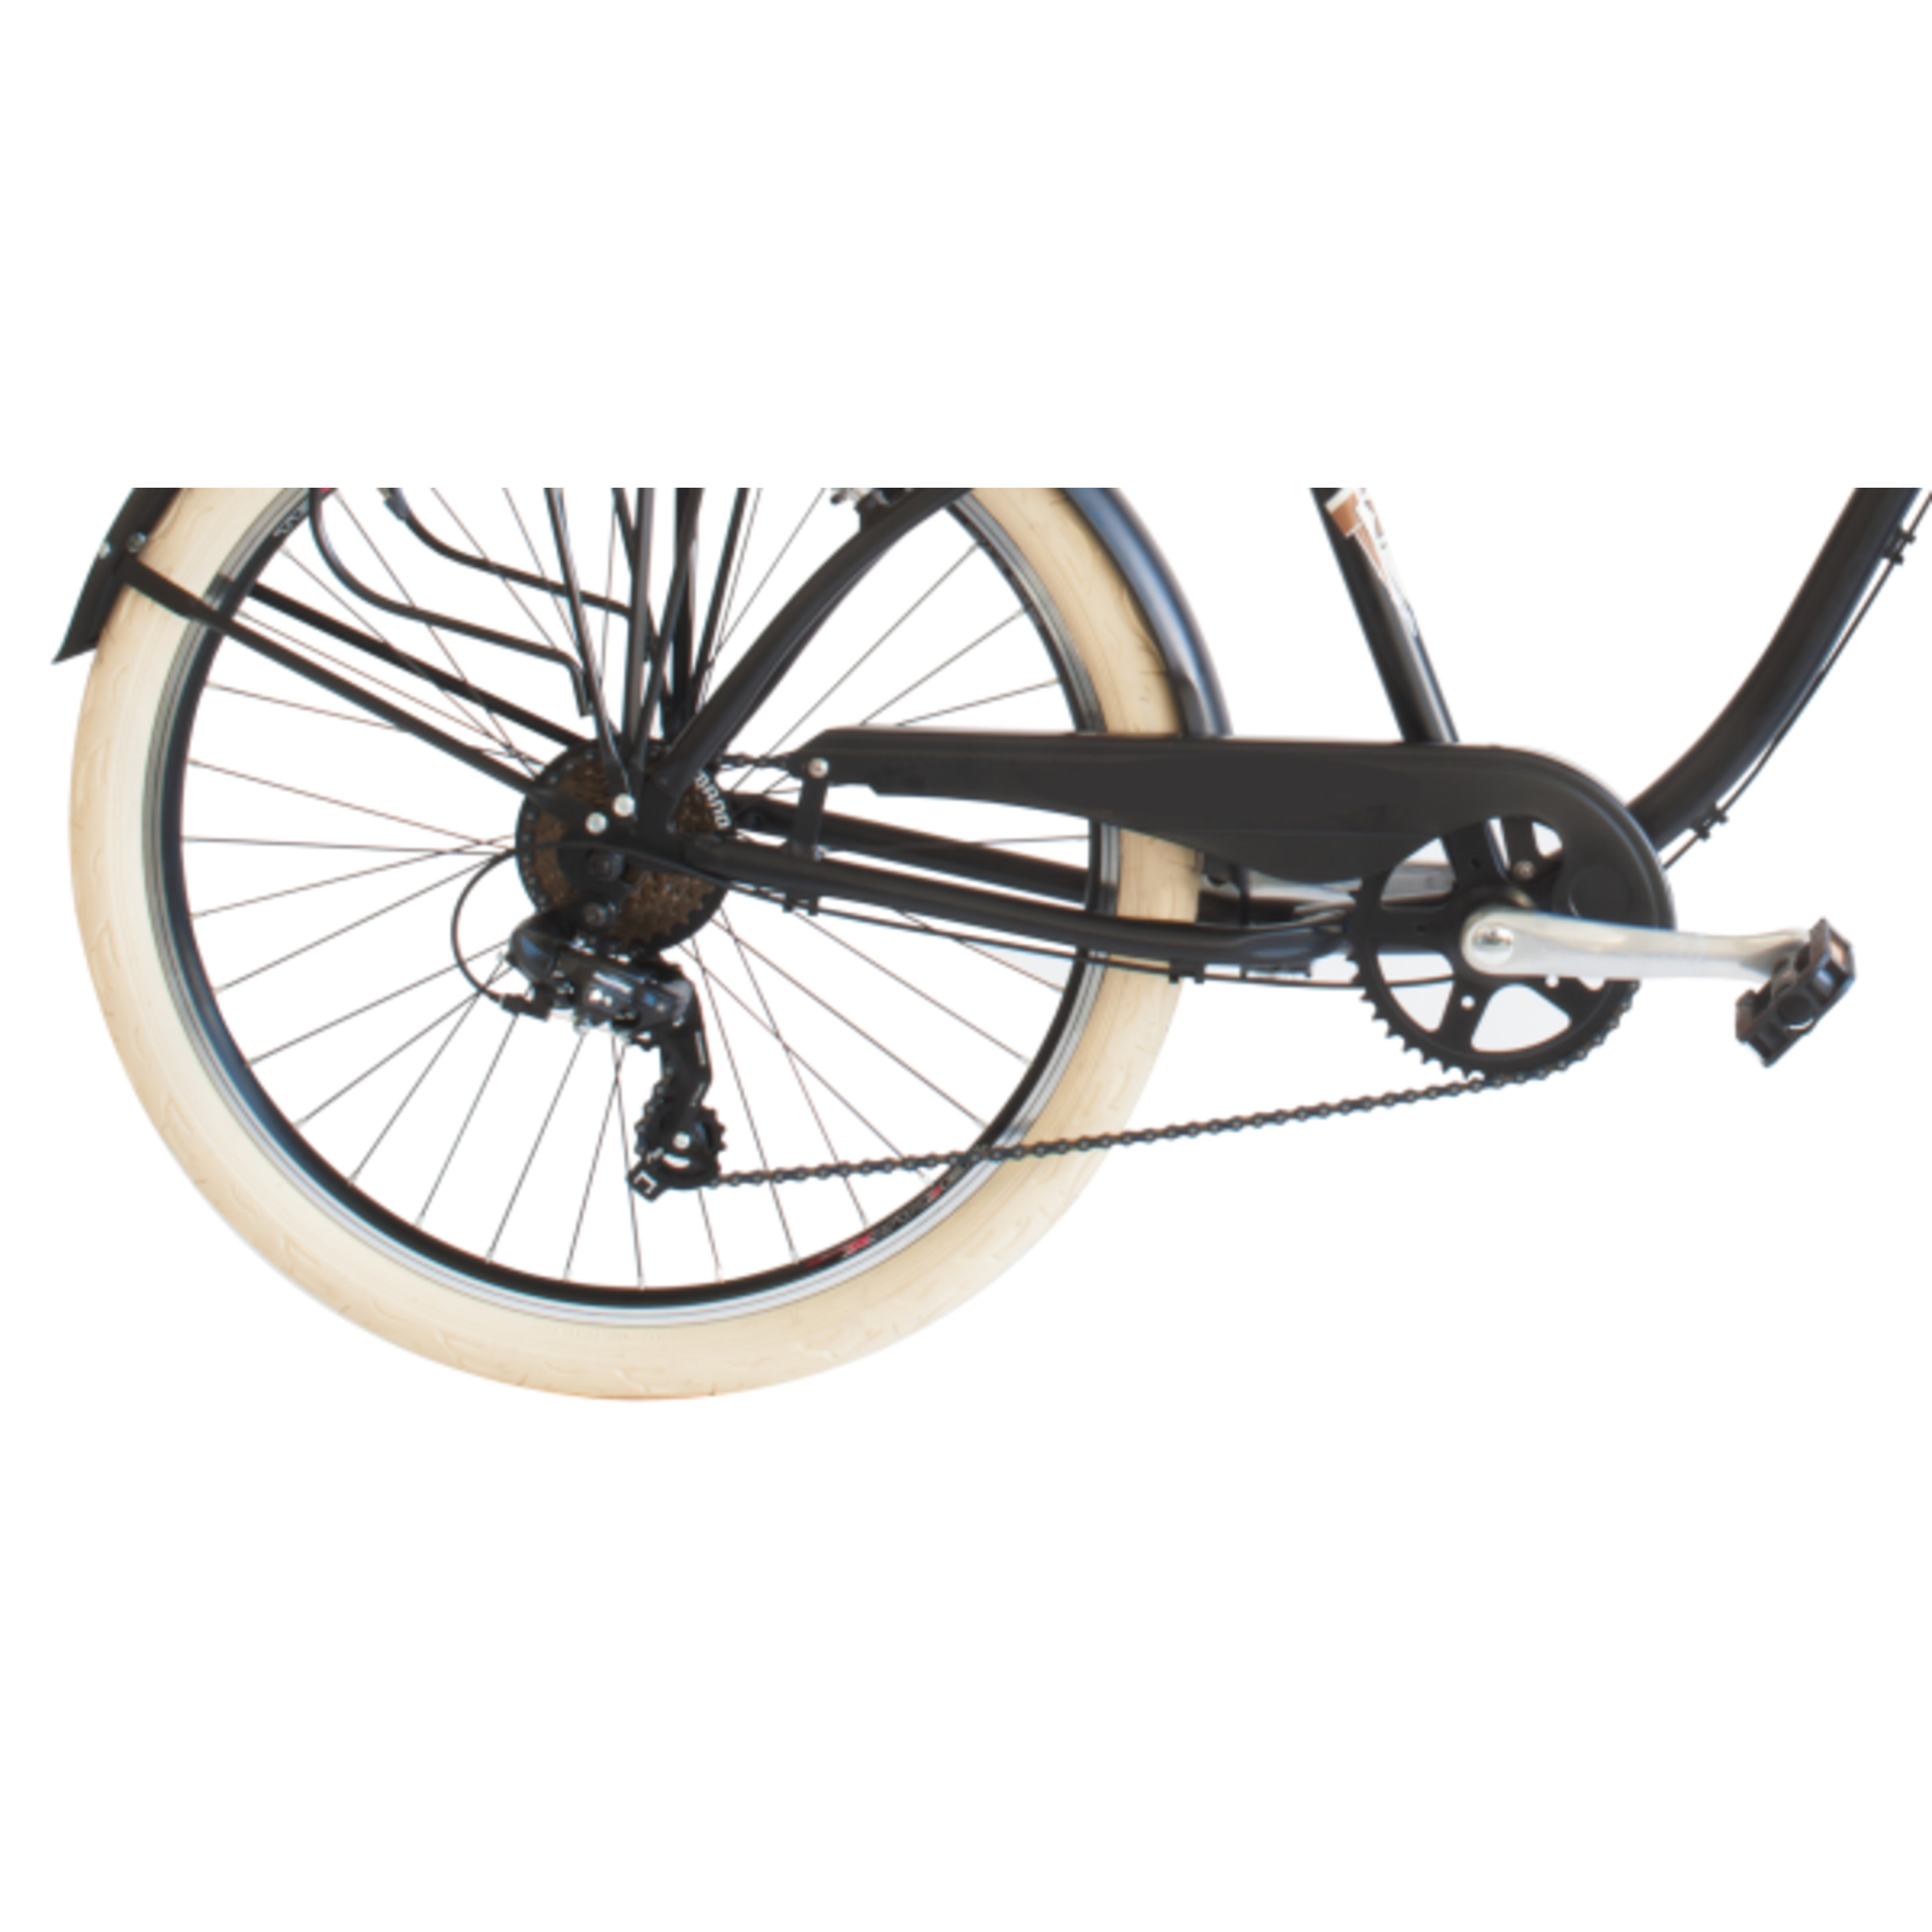 Bicicleta De Ciudad  Airbici 790m Cruiser - Negro - Vintage, paseo, ciudad, cruiser  MKP